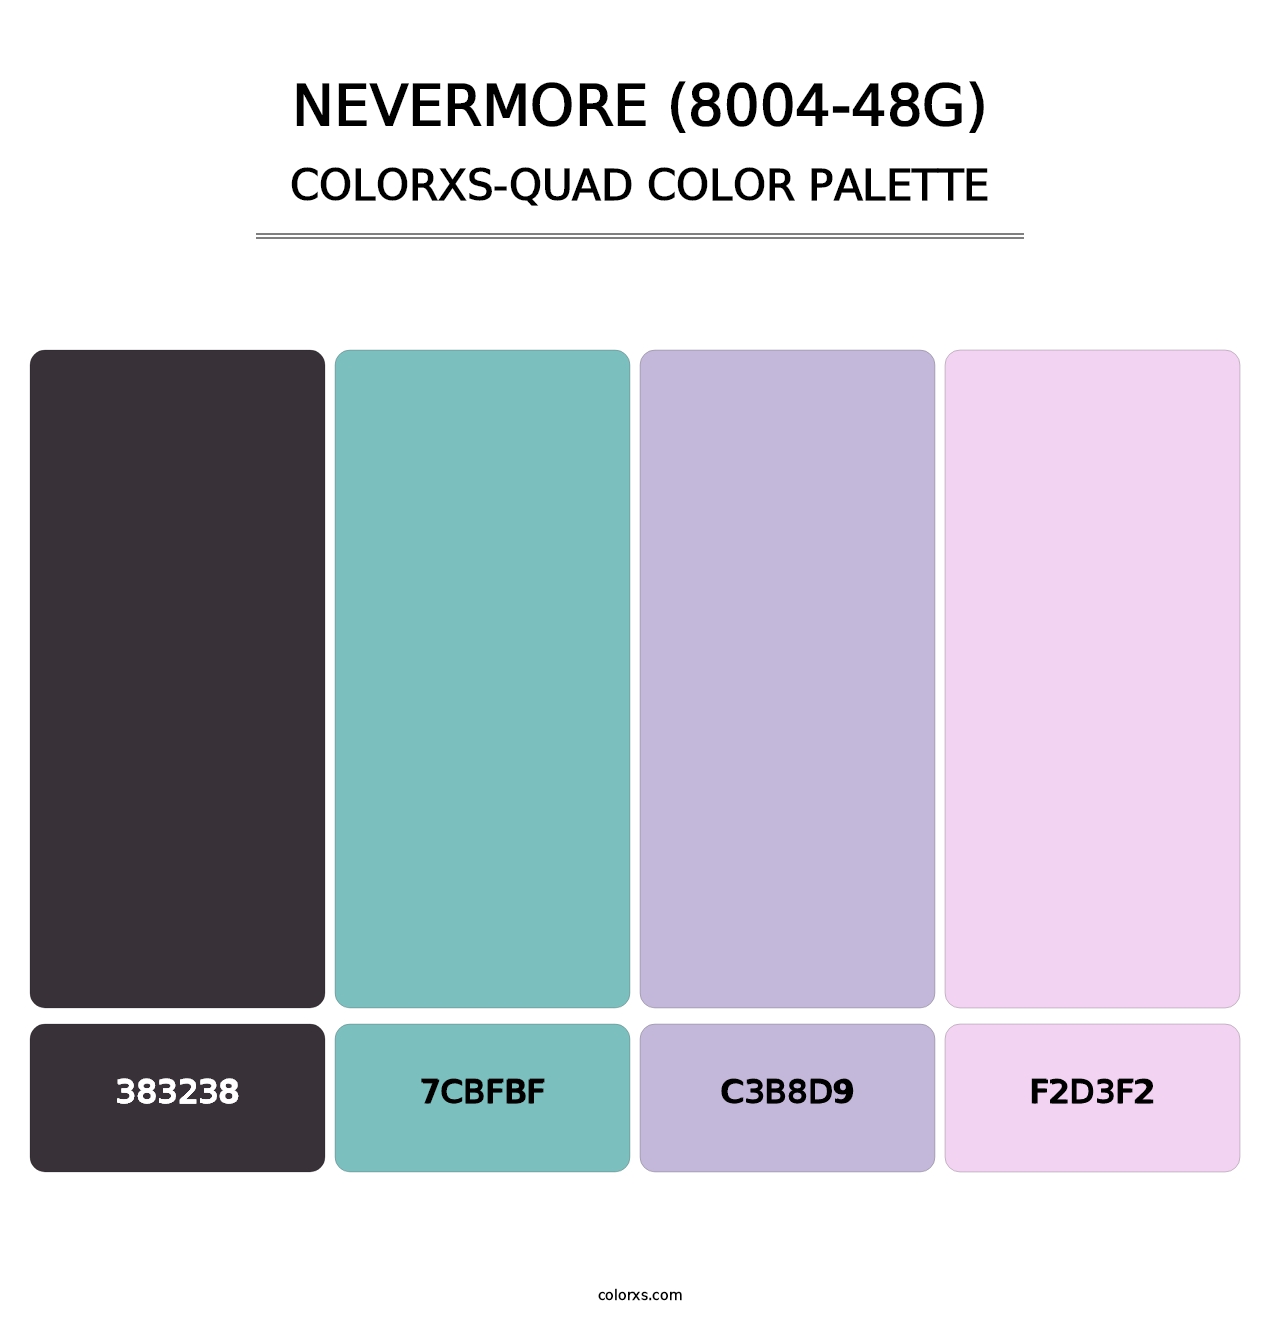 Nevermore (8004-48G) - Colorxs Quad Palette